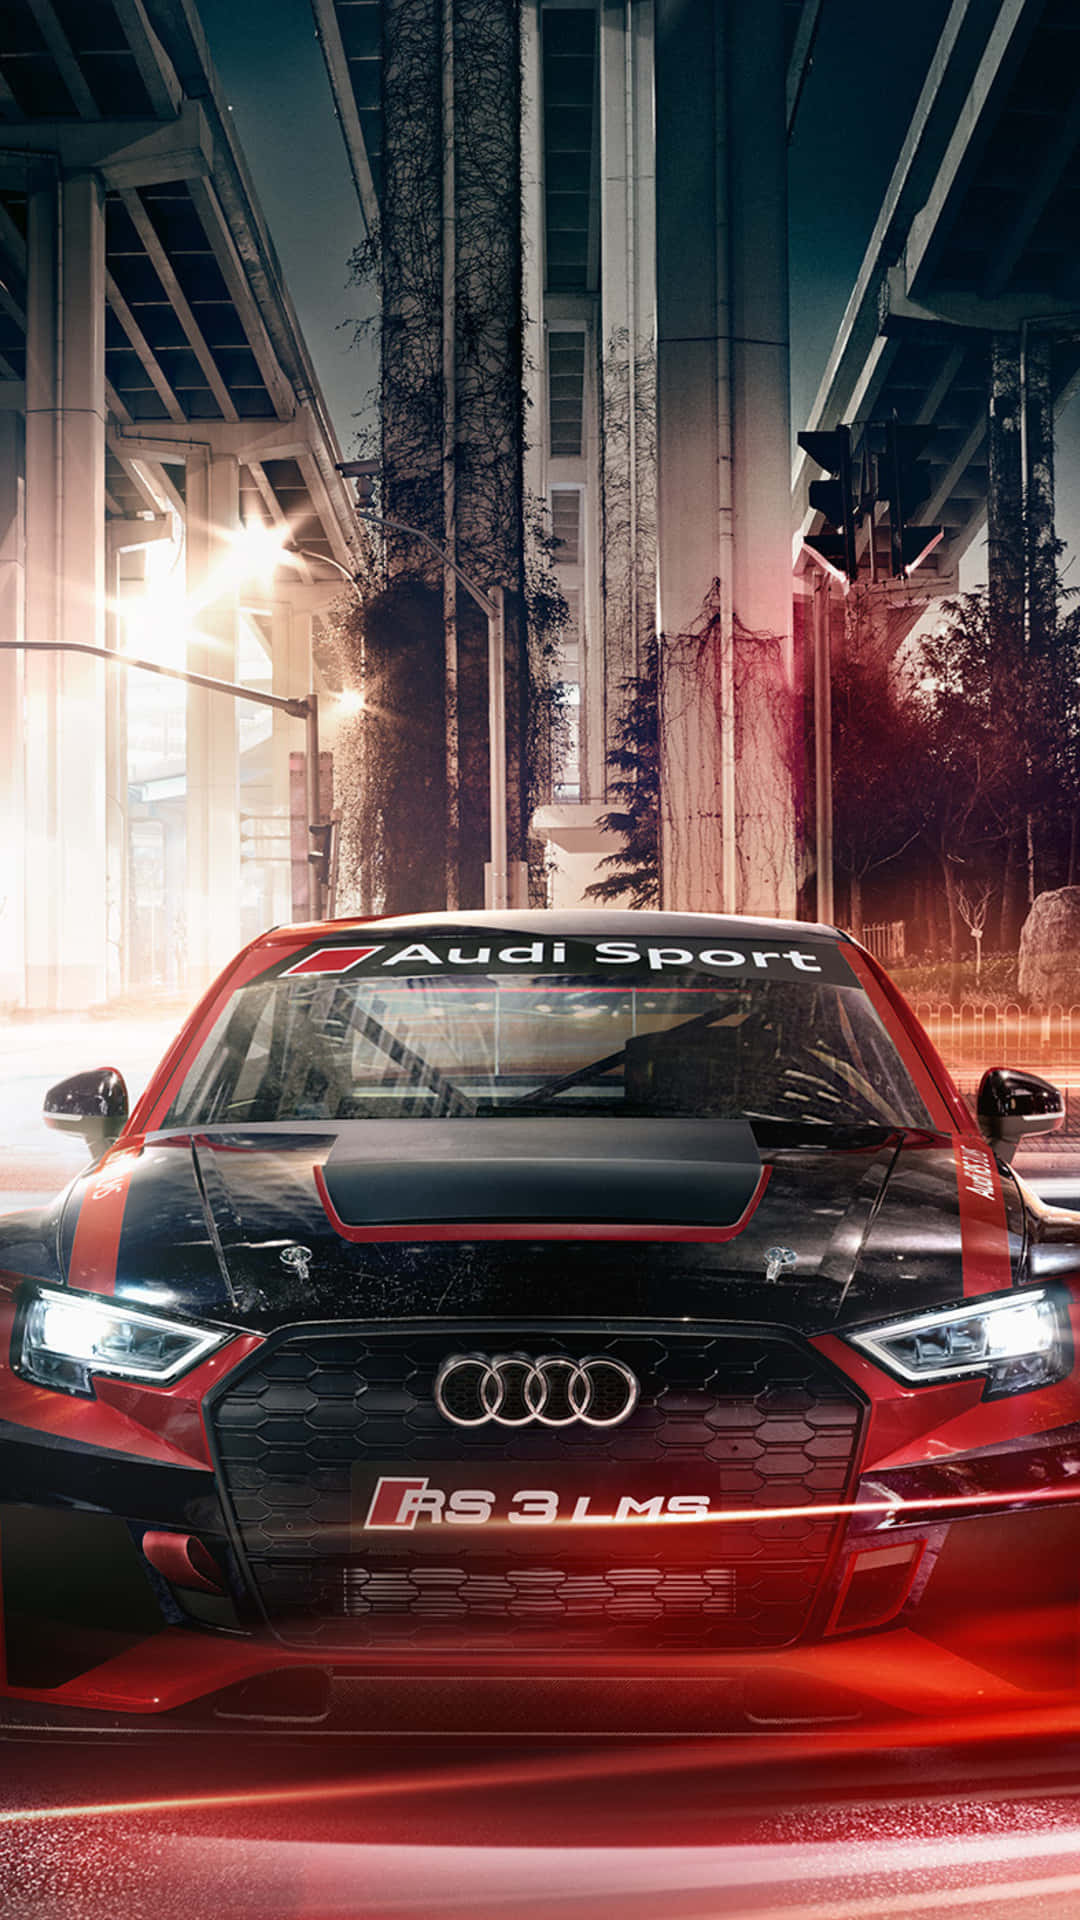 Det Audi of the Future tapet hylder elektrisk mobilitet. Wallpaper